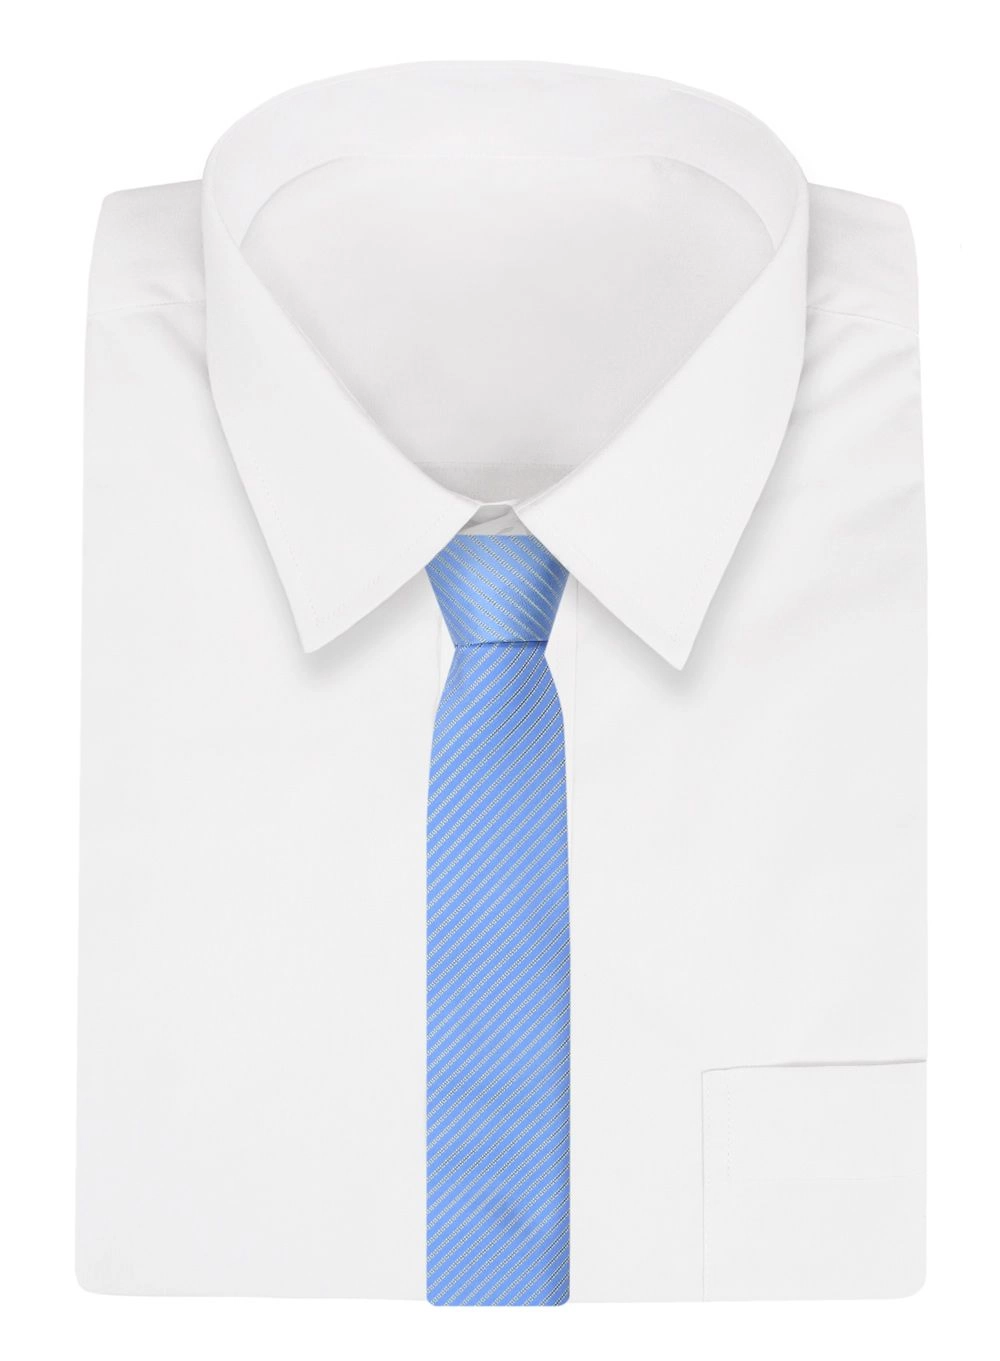 Krawat Błękitny w Paski, Prążki 7 cm, Elegancki, Klasyczny, Męski -ALTIES